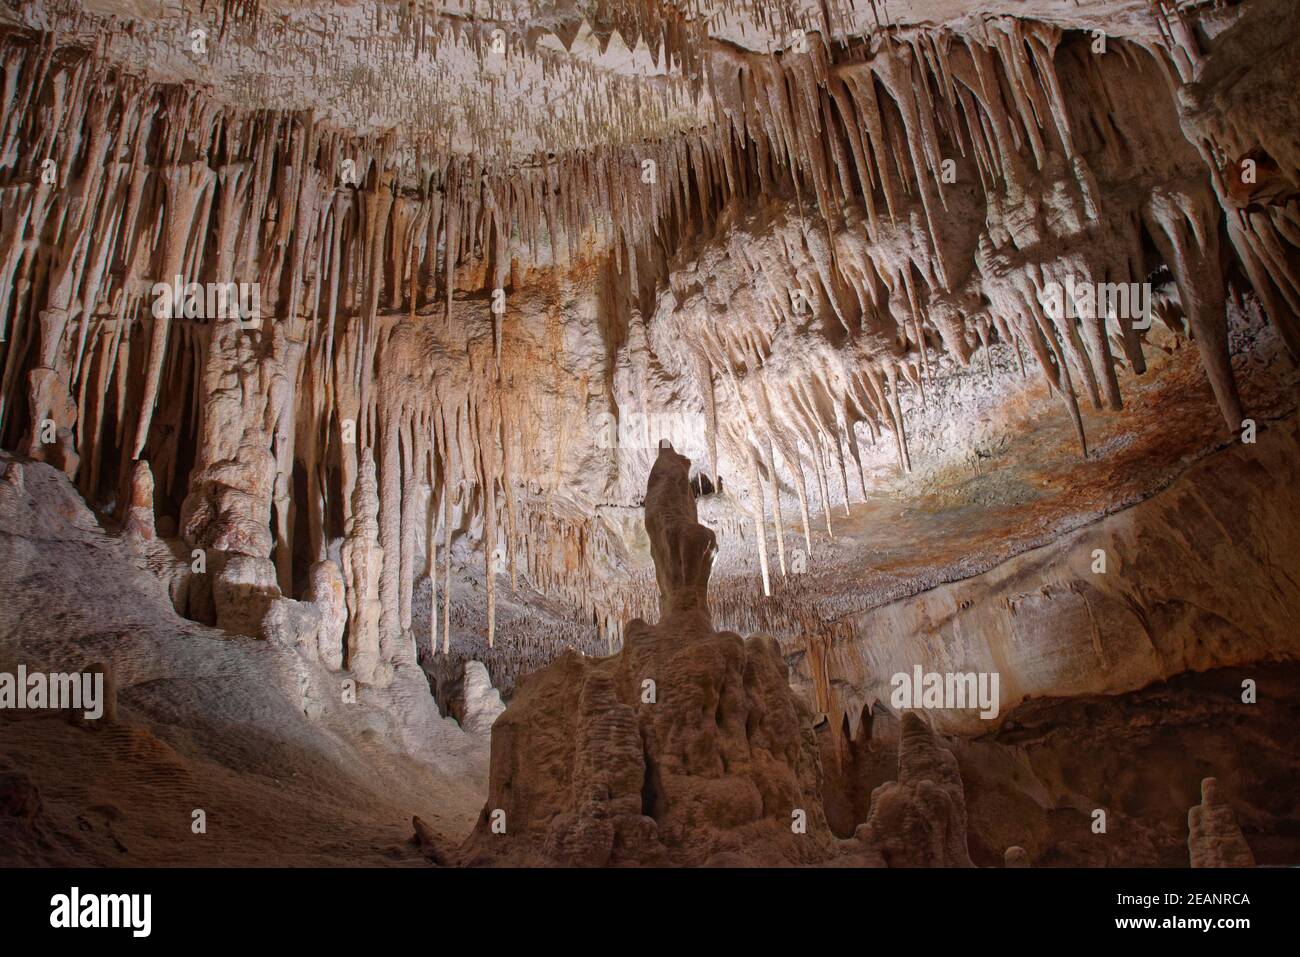 Grotte calcaire avec de nombreuses stalactites et stalagmites, grottes de Drach (Cuevas del Drach), Porto Cristo, Espagne Banque D'Images